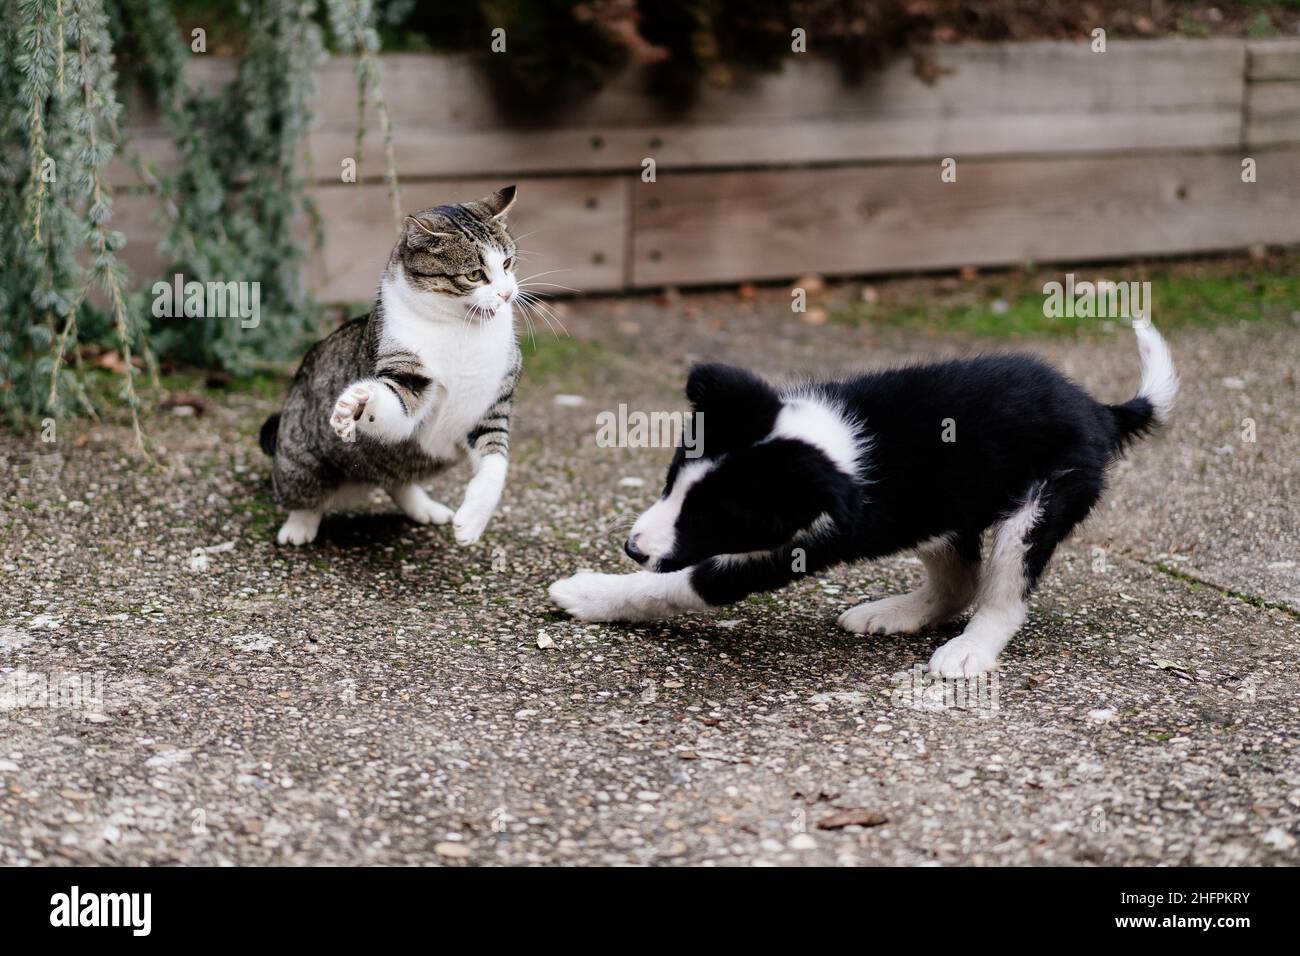 Erwachsene tabby Katze spielt Kampf mit Border Collie Welpen im Garten. Bewegungsunschärfe im Hund aufgrund der Bewegung Stockfoto